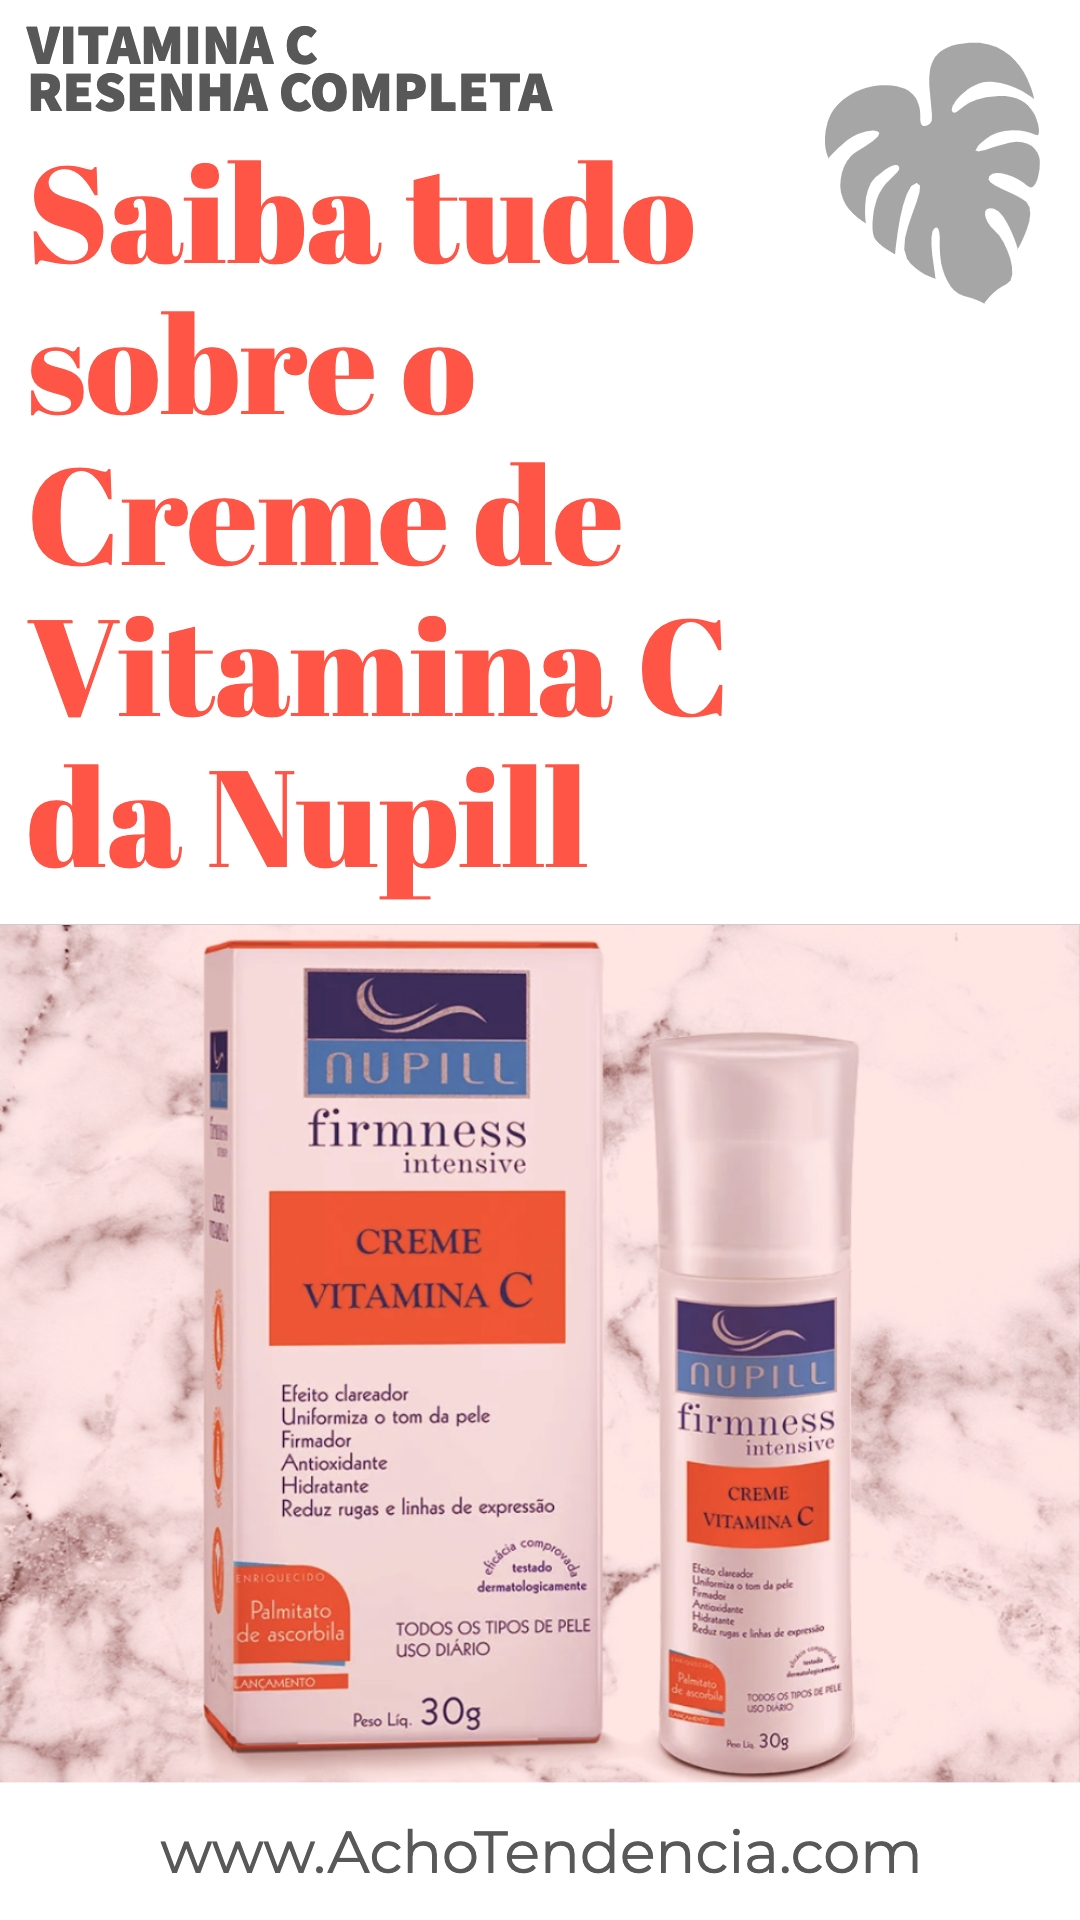 vitamina c, nupill, creme, resenha, review, como usar, funciona, cuidados com a pele,